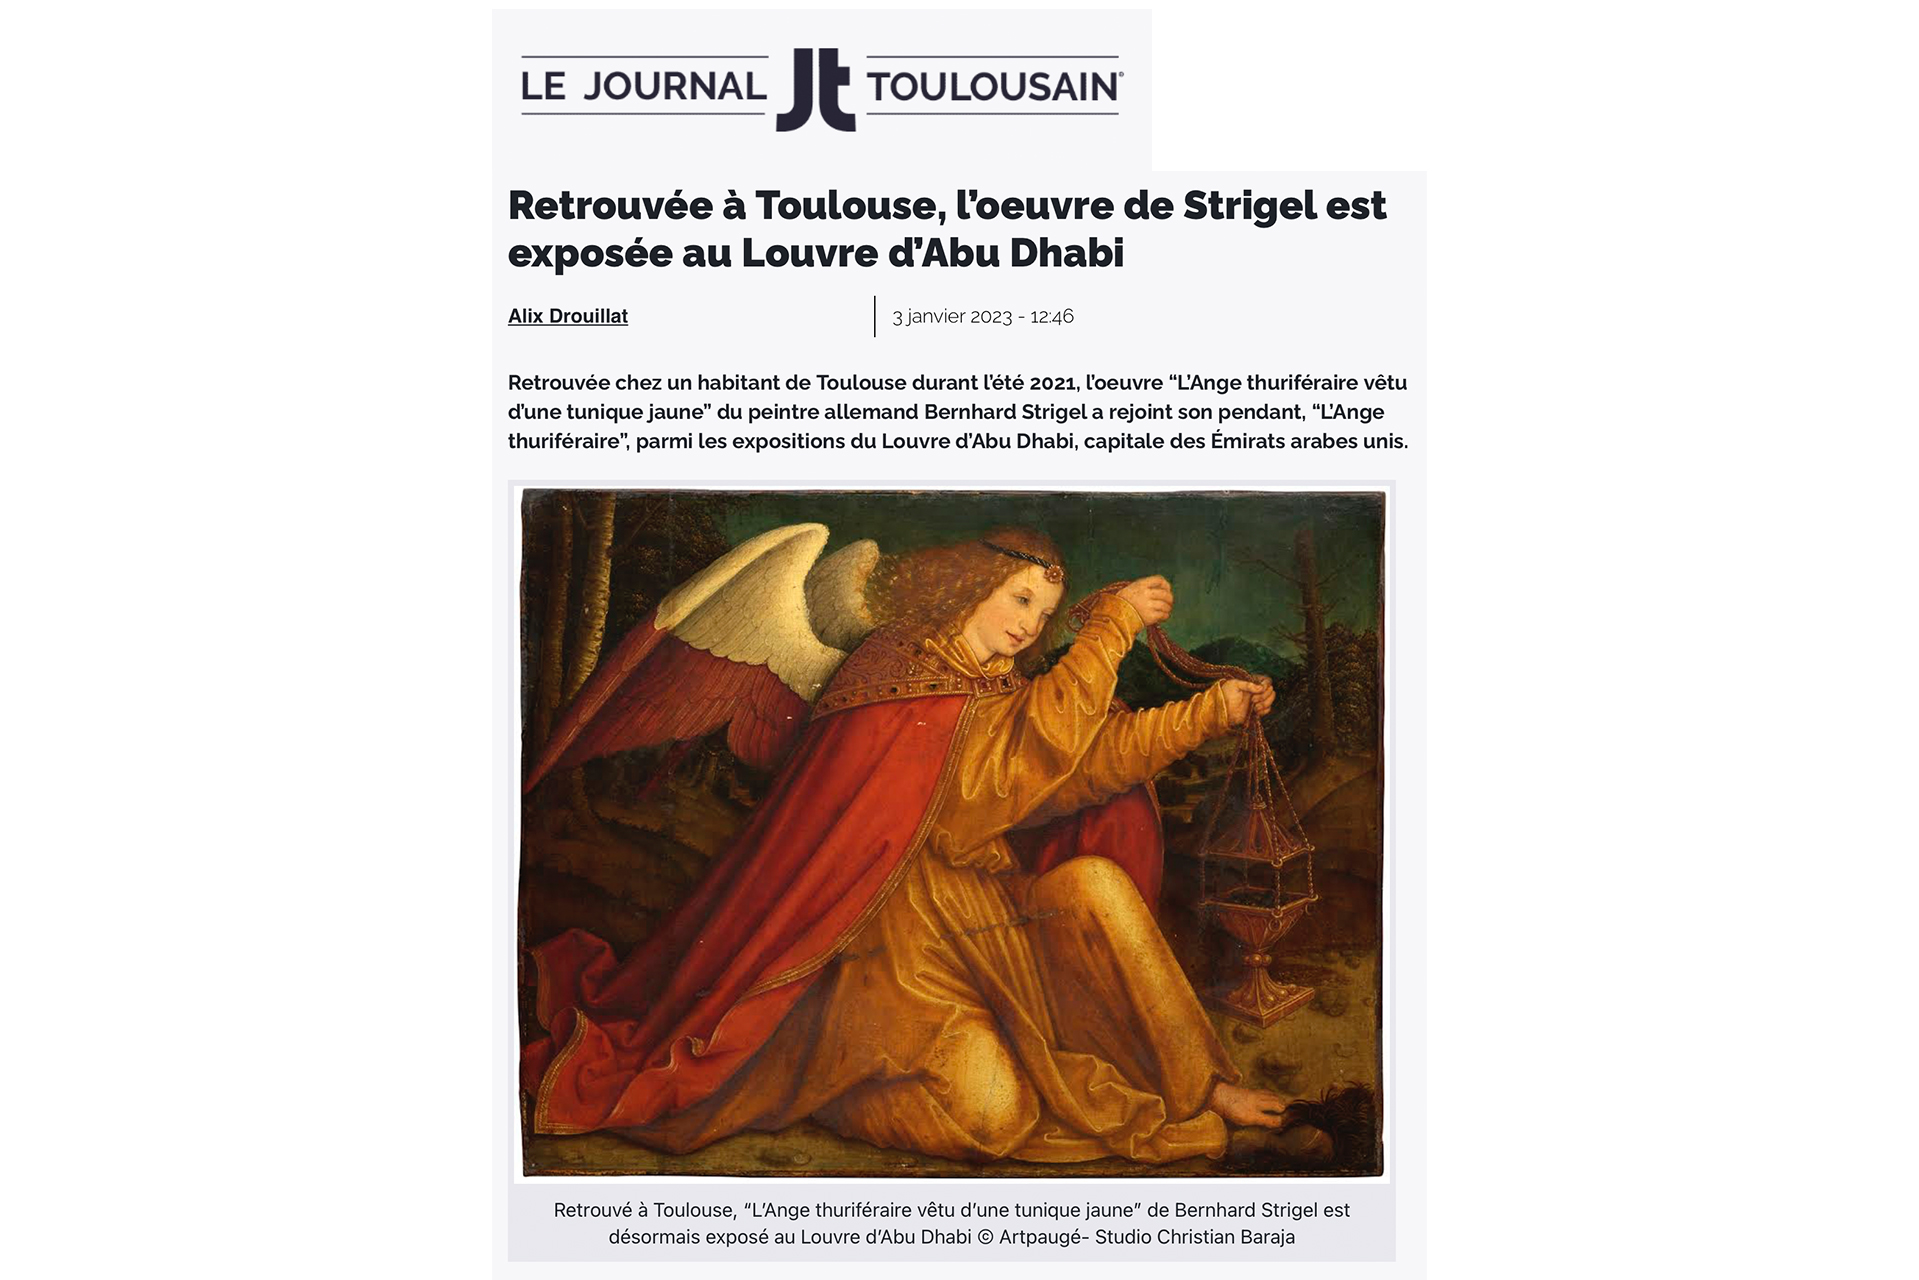 LE JOURNAL TOULOUSAIN - ARTPAUGÉE